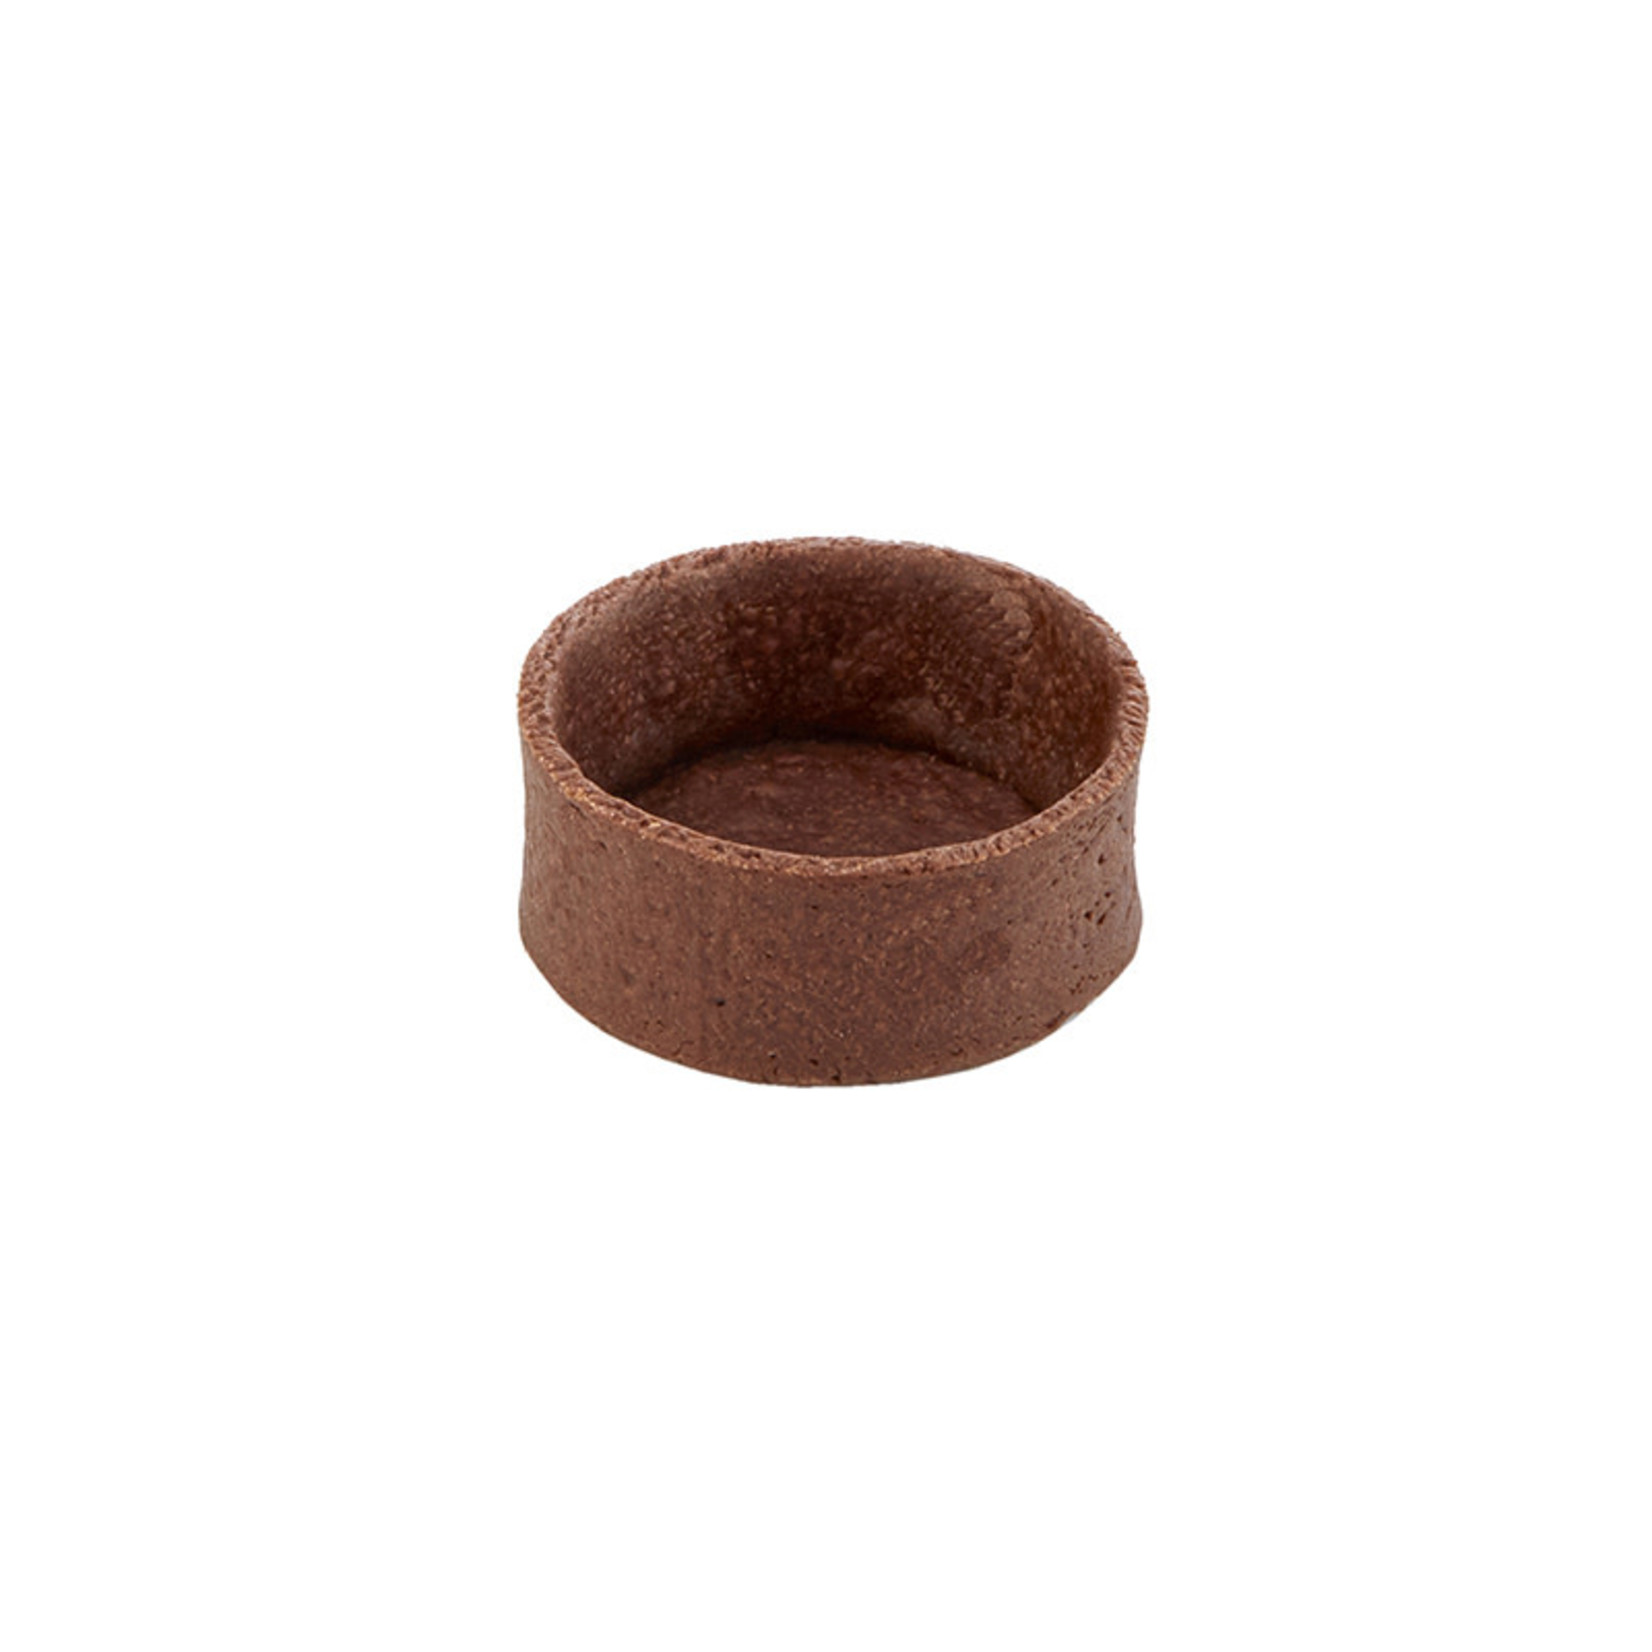 Moda Moda - Chocolate Round Tart shell - 1.9" (144 ct)